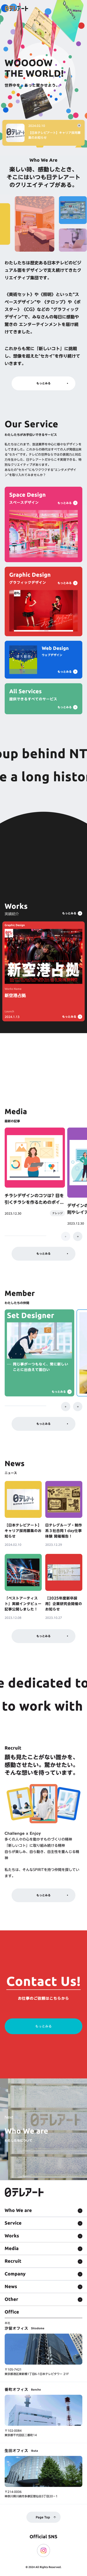 株式会社日本テレビアート | スペースデザイン・グラフィックデザイン・Webデザインのモバイルサイズの画像